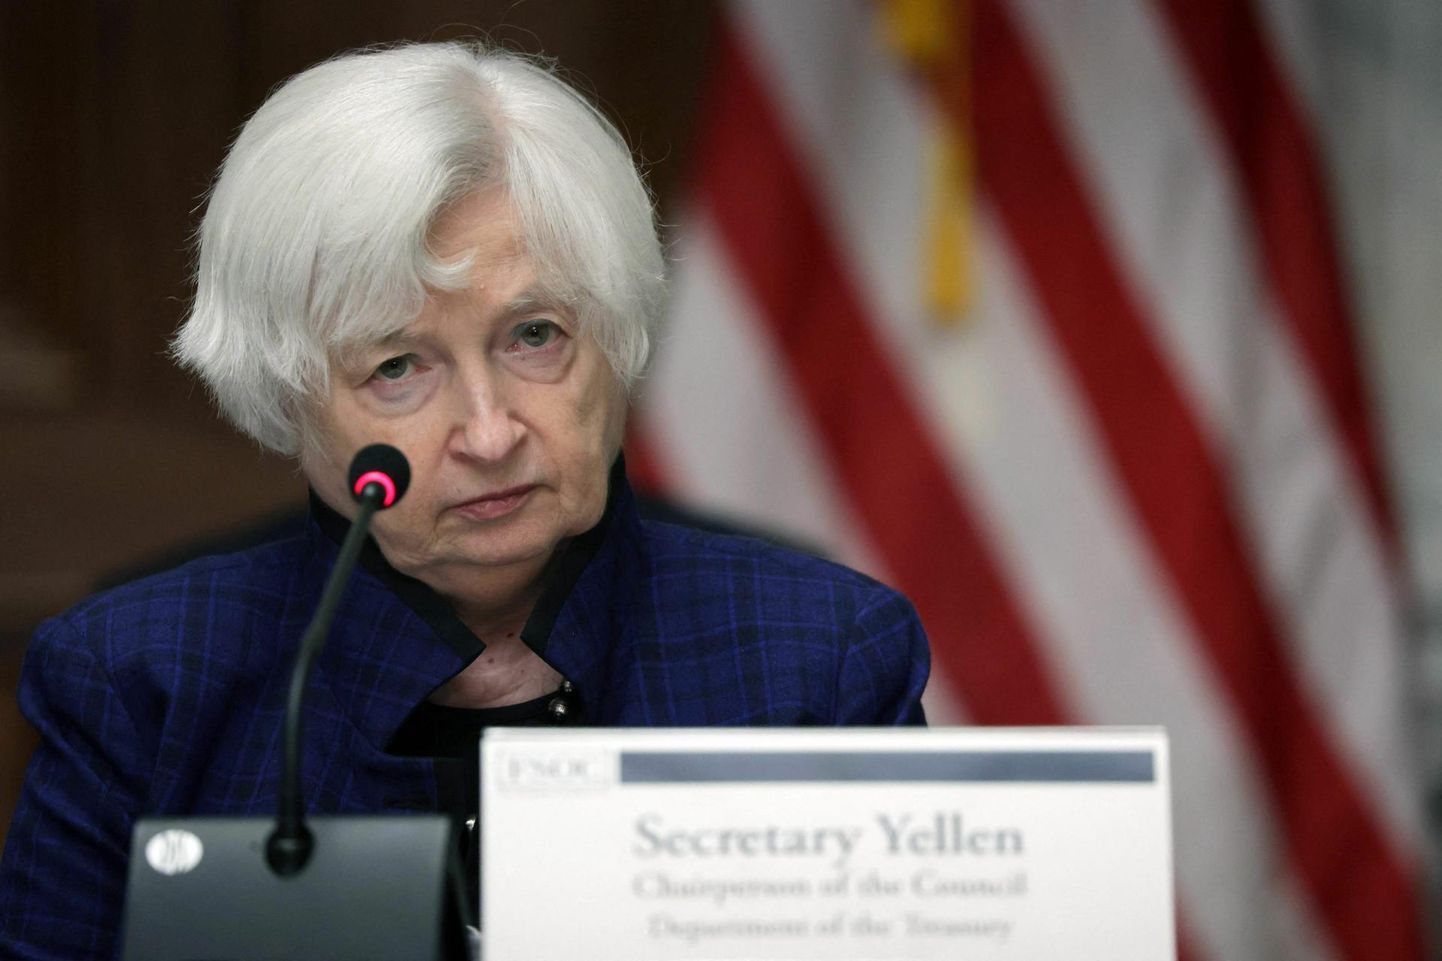 Ameerika Ühendriikide rahandusminister Janet Yellen kinnitas alles üsna hiljuti, et USA ei kavatse vähemalt esialgu üleilmset tulumaksu koguma hakata.